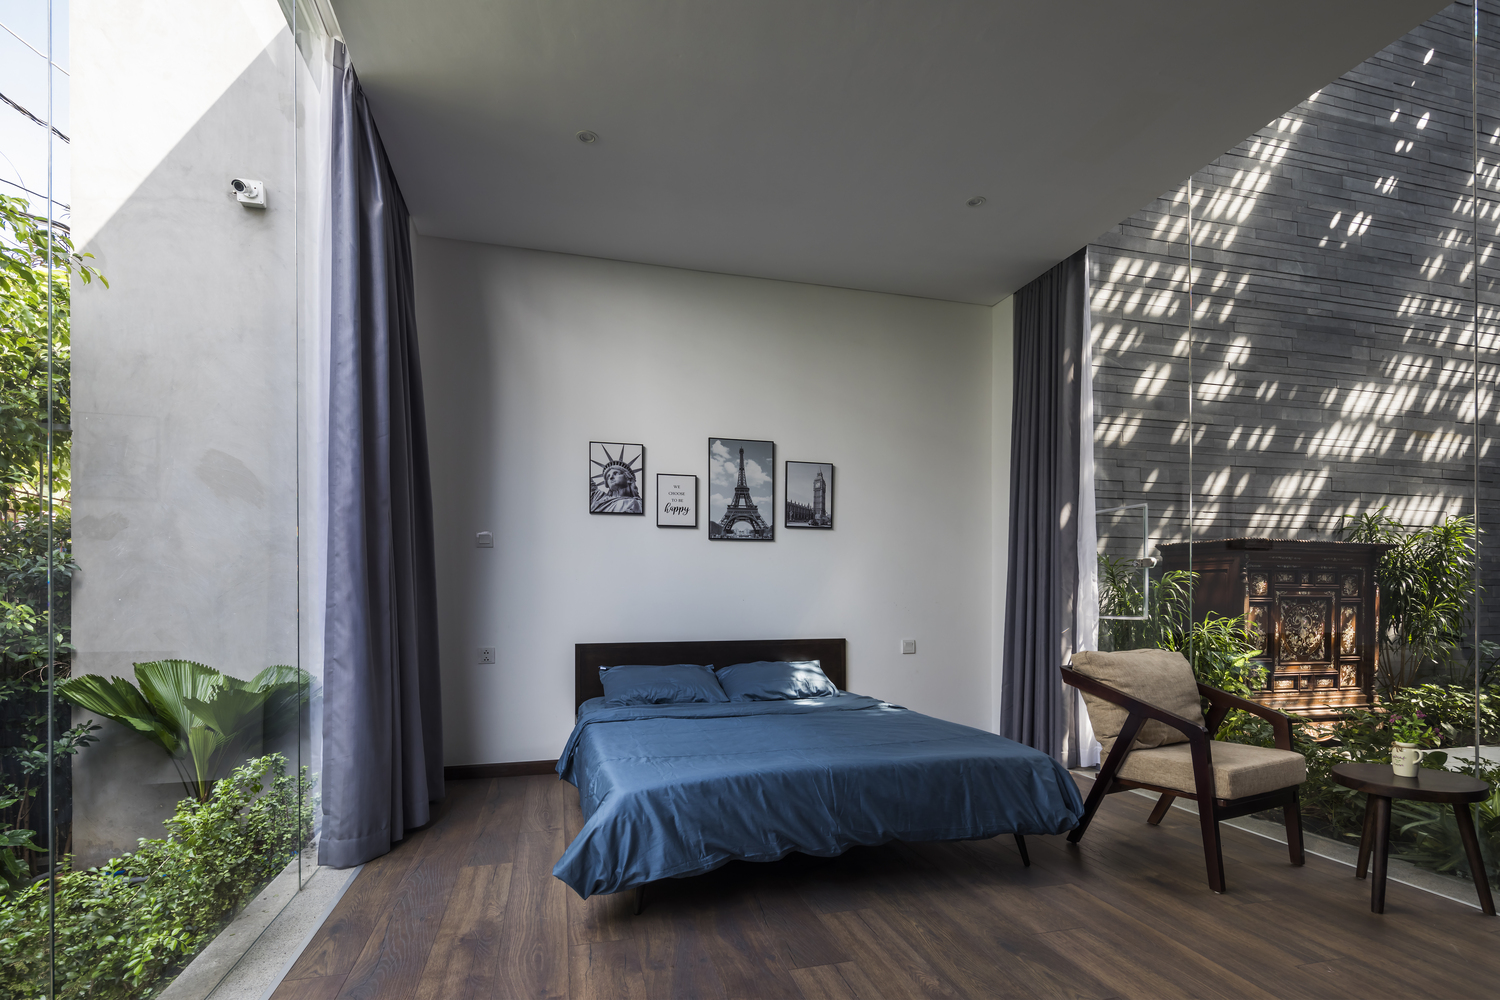 Một phòng ngủ khác được bố trí ở tầng trệt, với cửa kính trong suốt nhìn ra cây cối xanh mướt, kèm theo rèm che để tạo sự riêng tư khi cần thiết.